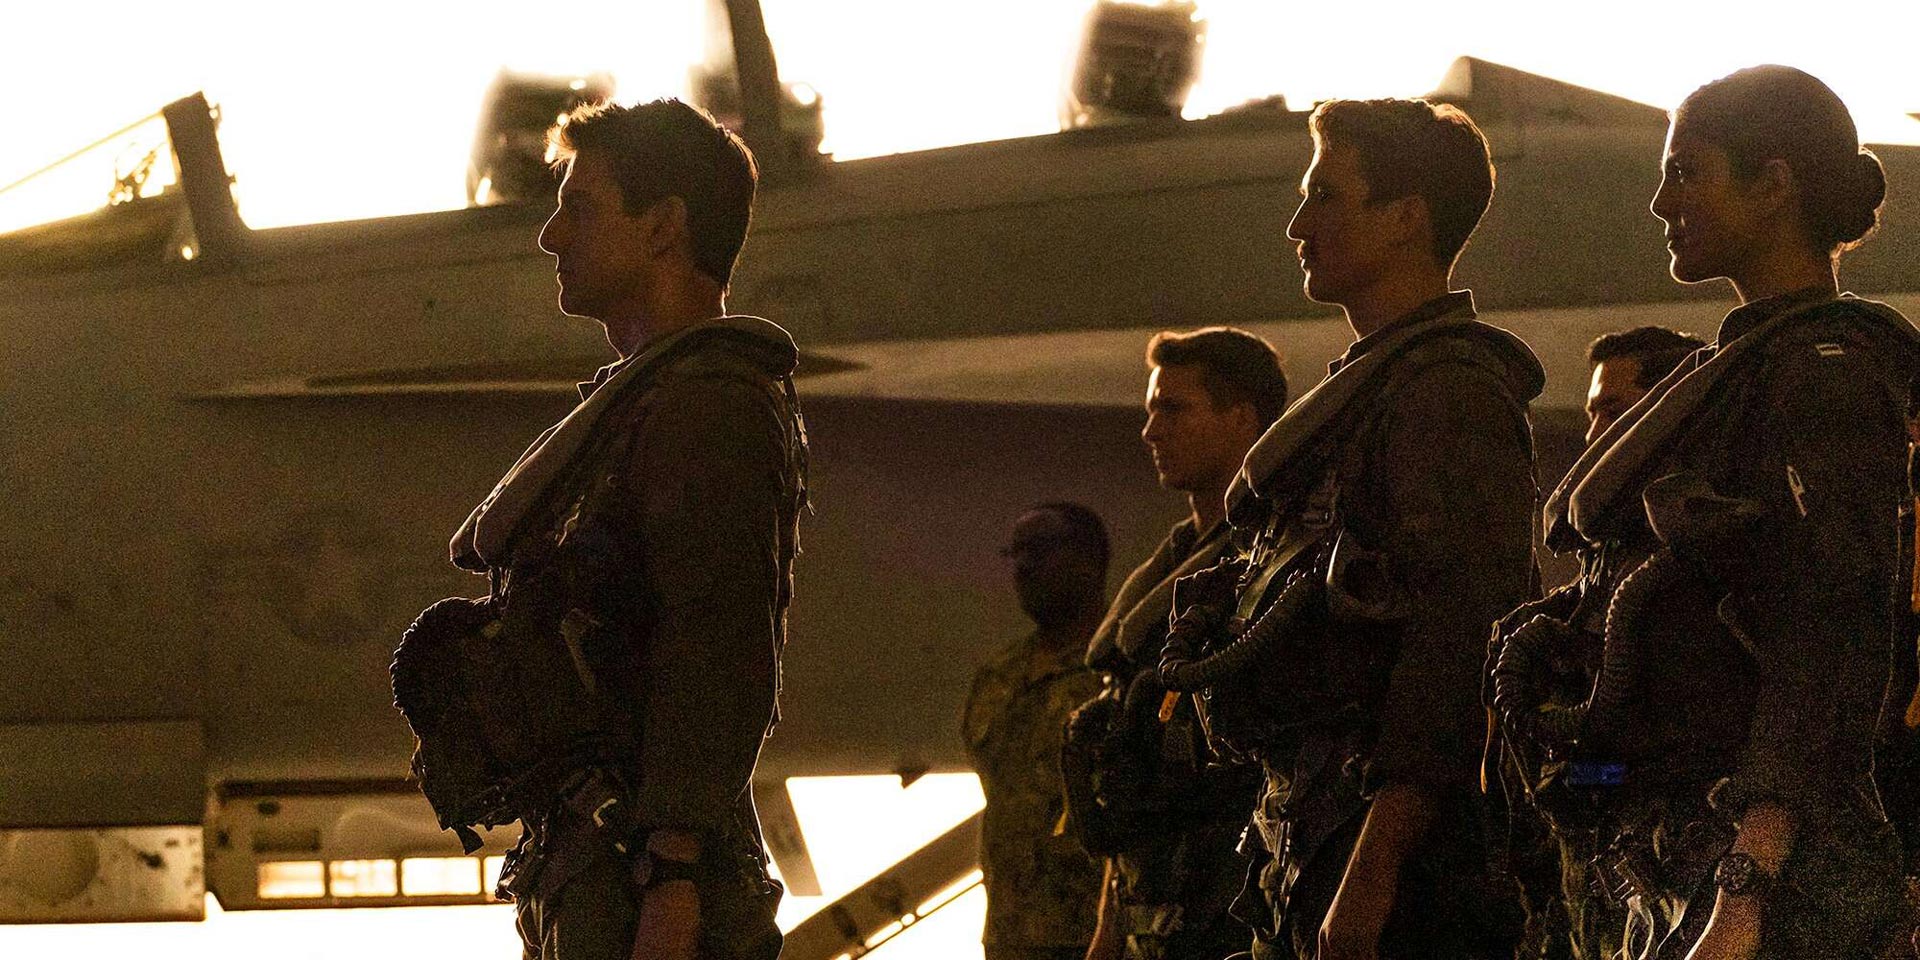 تام کروز در لباس خلبانی در کنار دیگر خلبانان در فیلم تاپ گان ماوریک